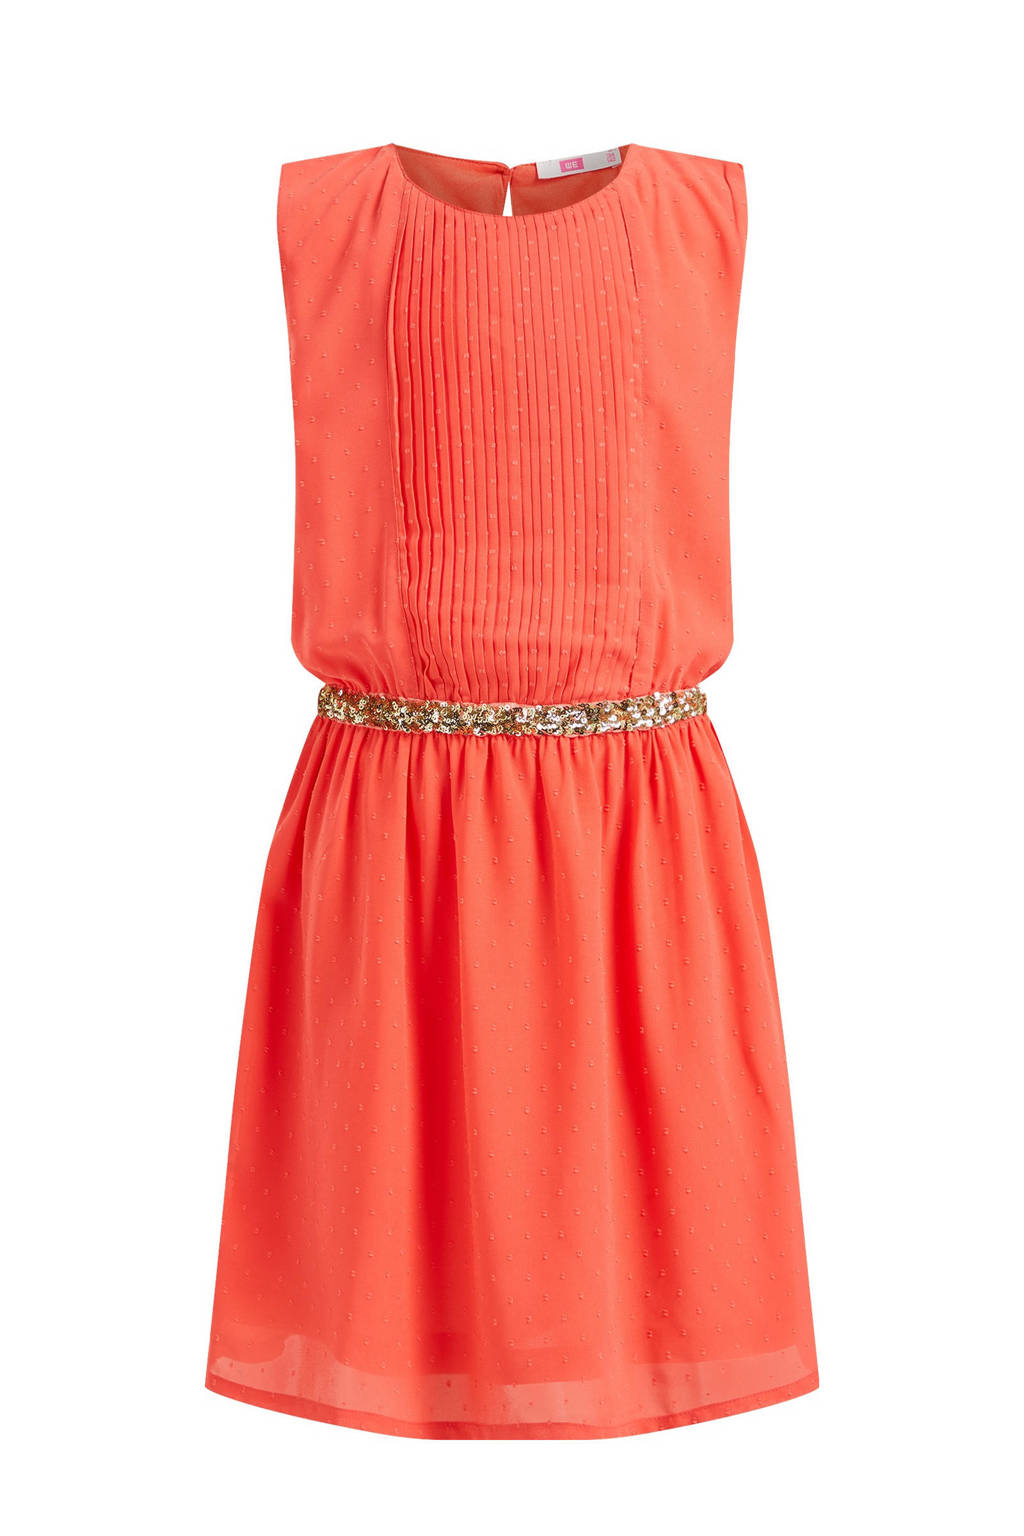 WE Fashion jurk van gerecycled polyester oranje